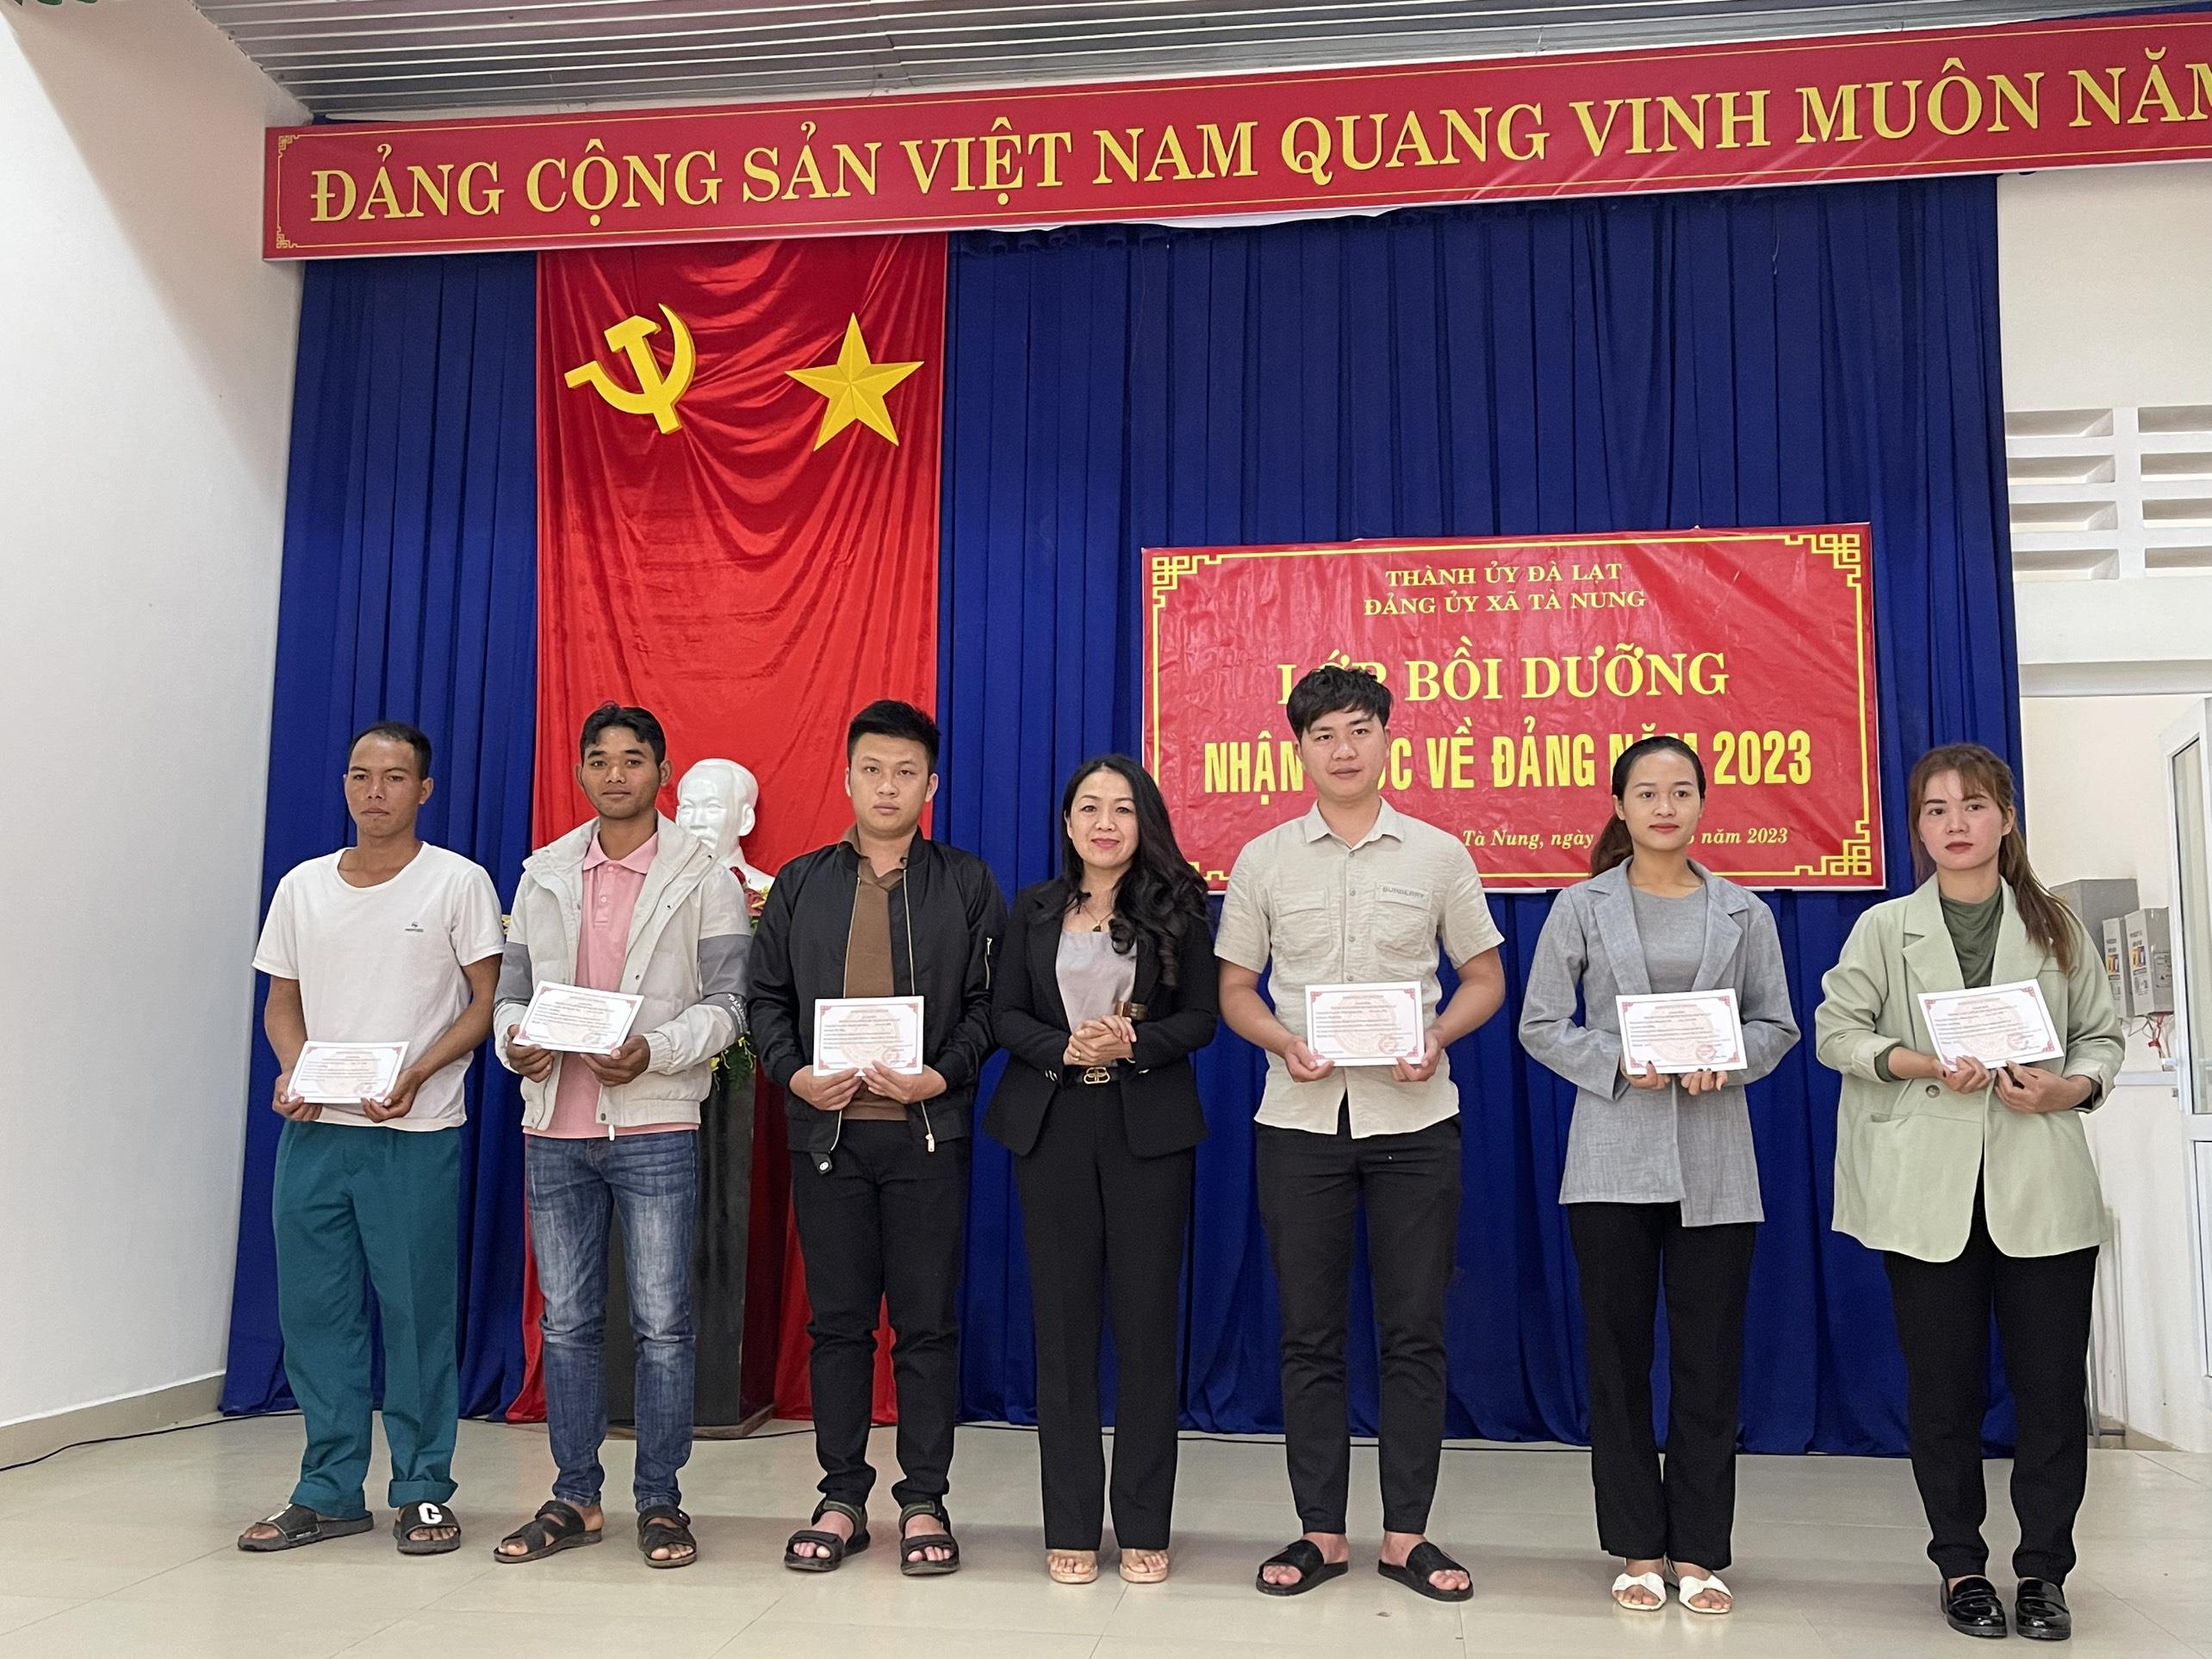 Đồng chí Trần Trương Thị Thiên Trà - Phó Giám đốc Trung tâm Chính trị trao Giấy chứng nhận cho học viên